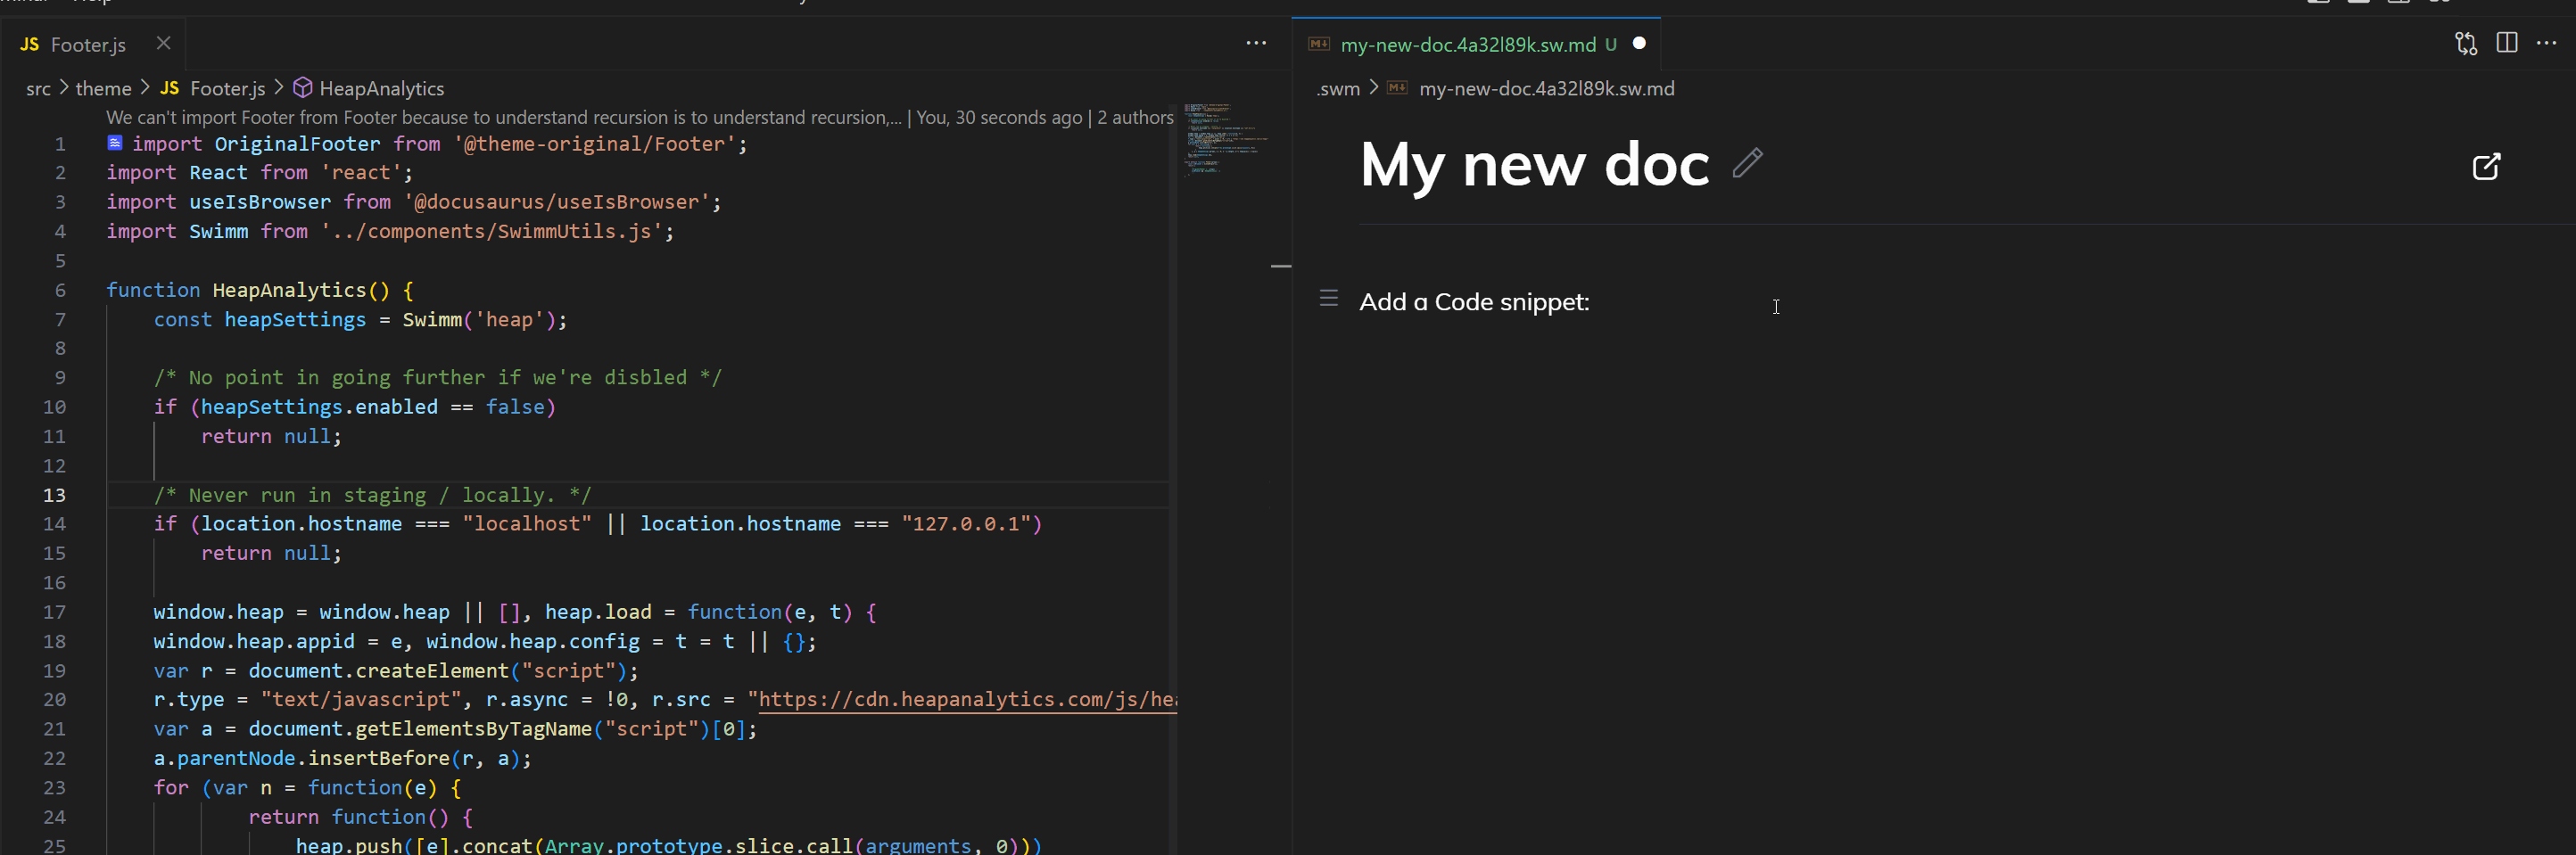 Add code snippet in VS Code